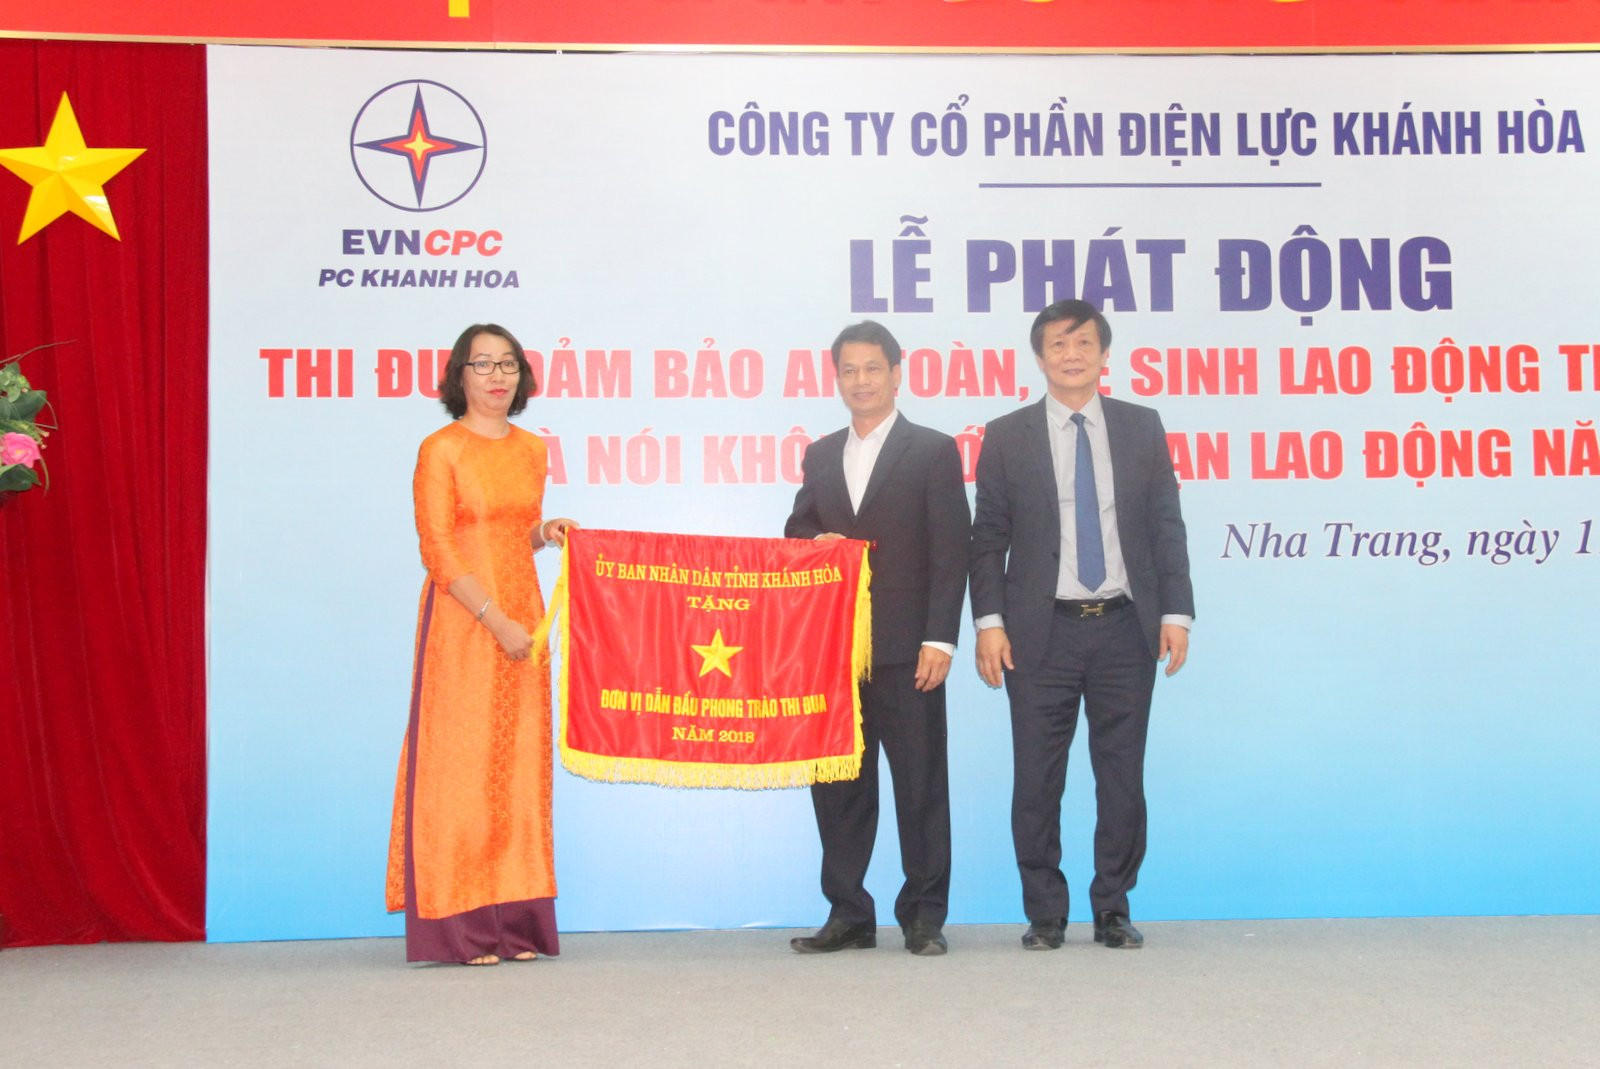  Ông Trần Sơn Hải trao cờ thi đua xuất sắc cho Điện lực Cam Ranh - Khánh Hơn